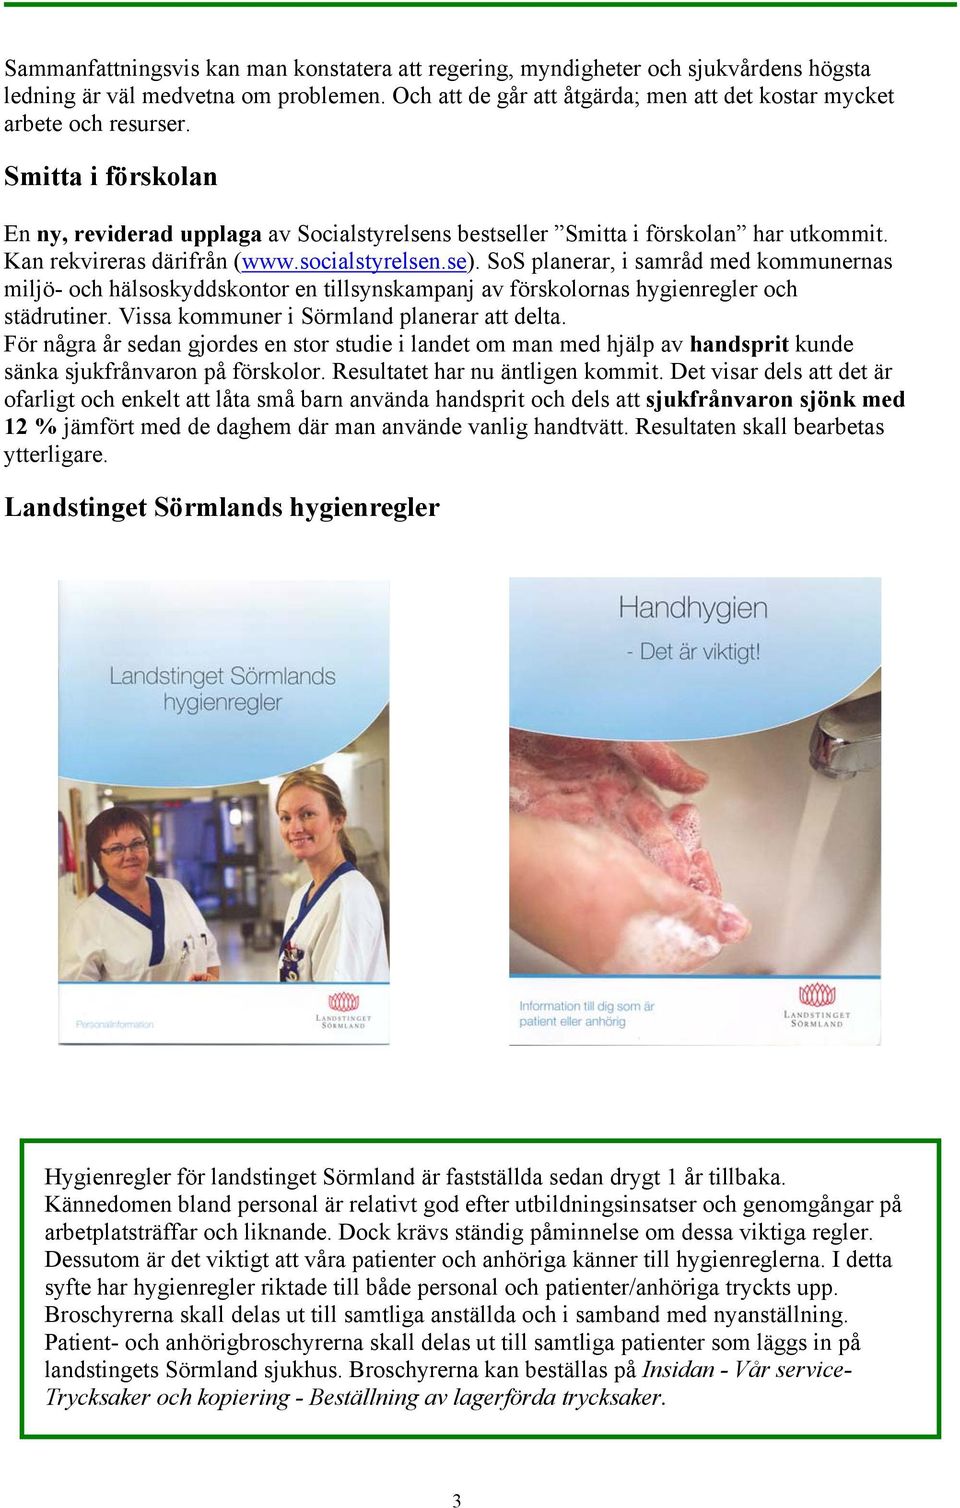 SoS planerar, i samråd med kommunernas miljö- och hälsoskyddskontor en tillsynskampanj av förskolornas hygienregler och städrutiner. Vissa kommuner i Sörmland planerar att delta.